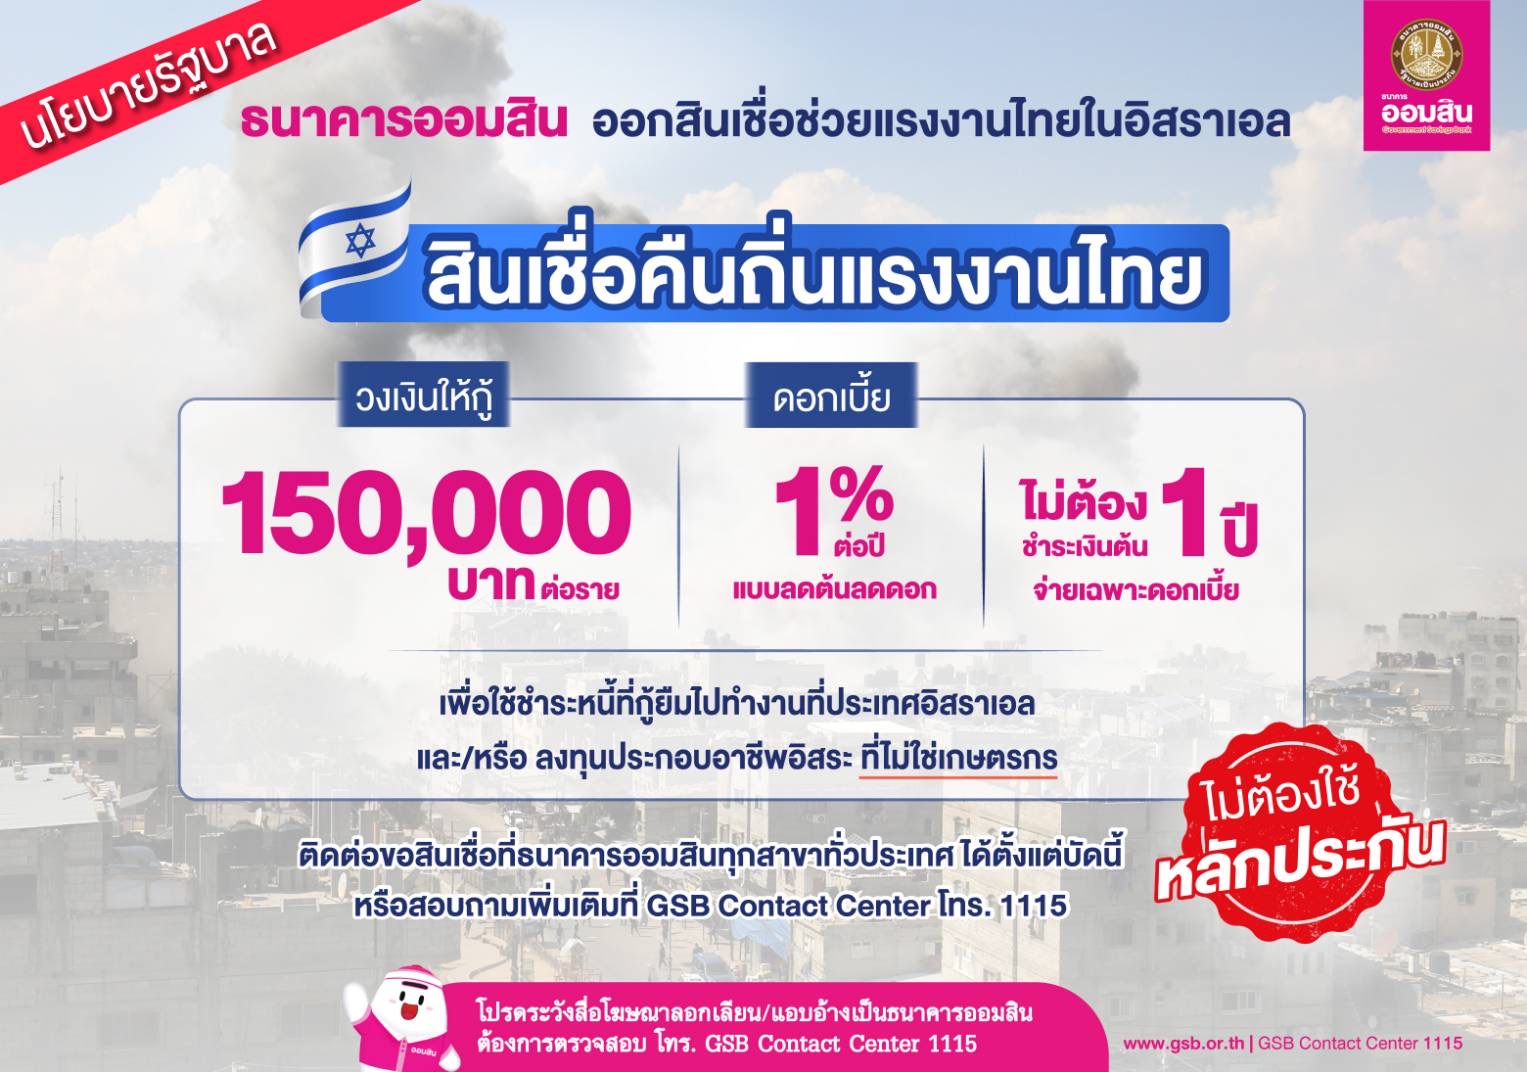 ออมสิน ออกสินเชื่อคืนถิ่นแรงงานไทย  ดอกเบี้ย 1% ปลอดเงินต้น 1 ปี